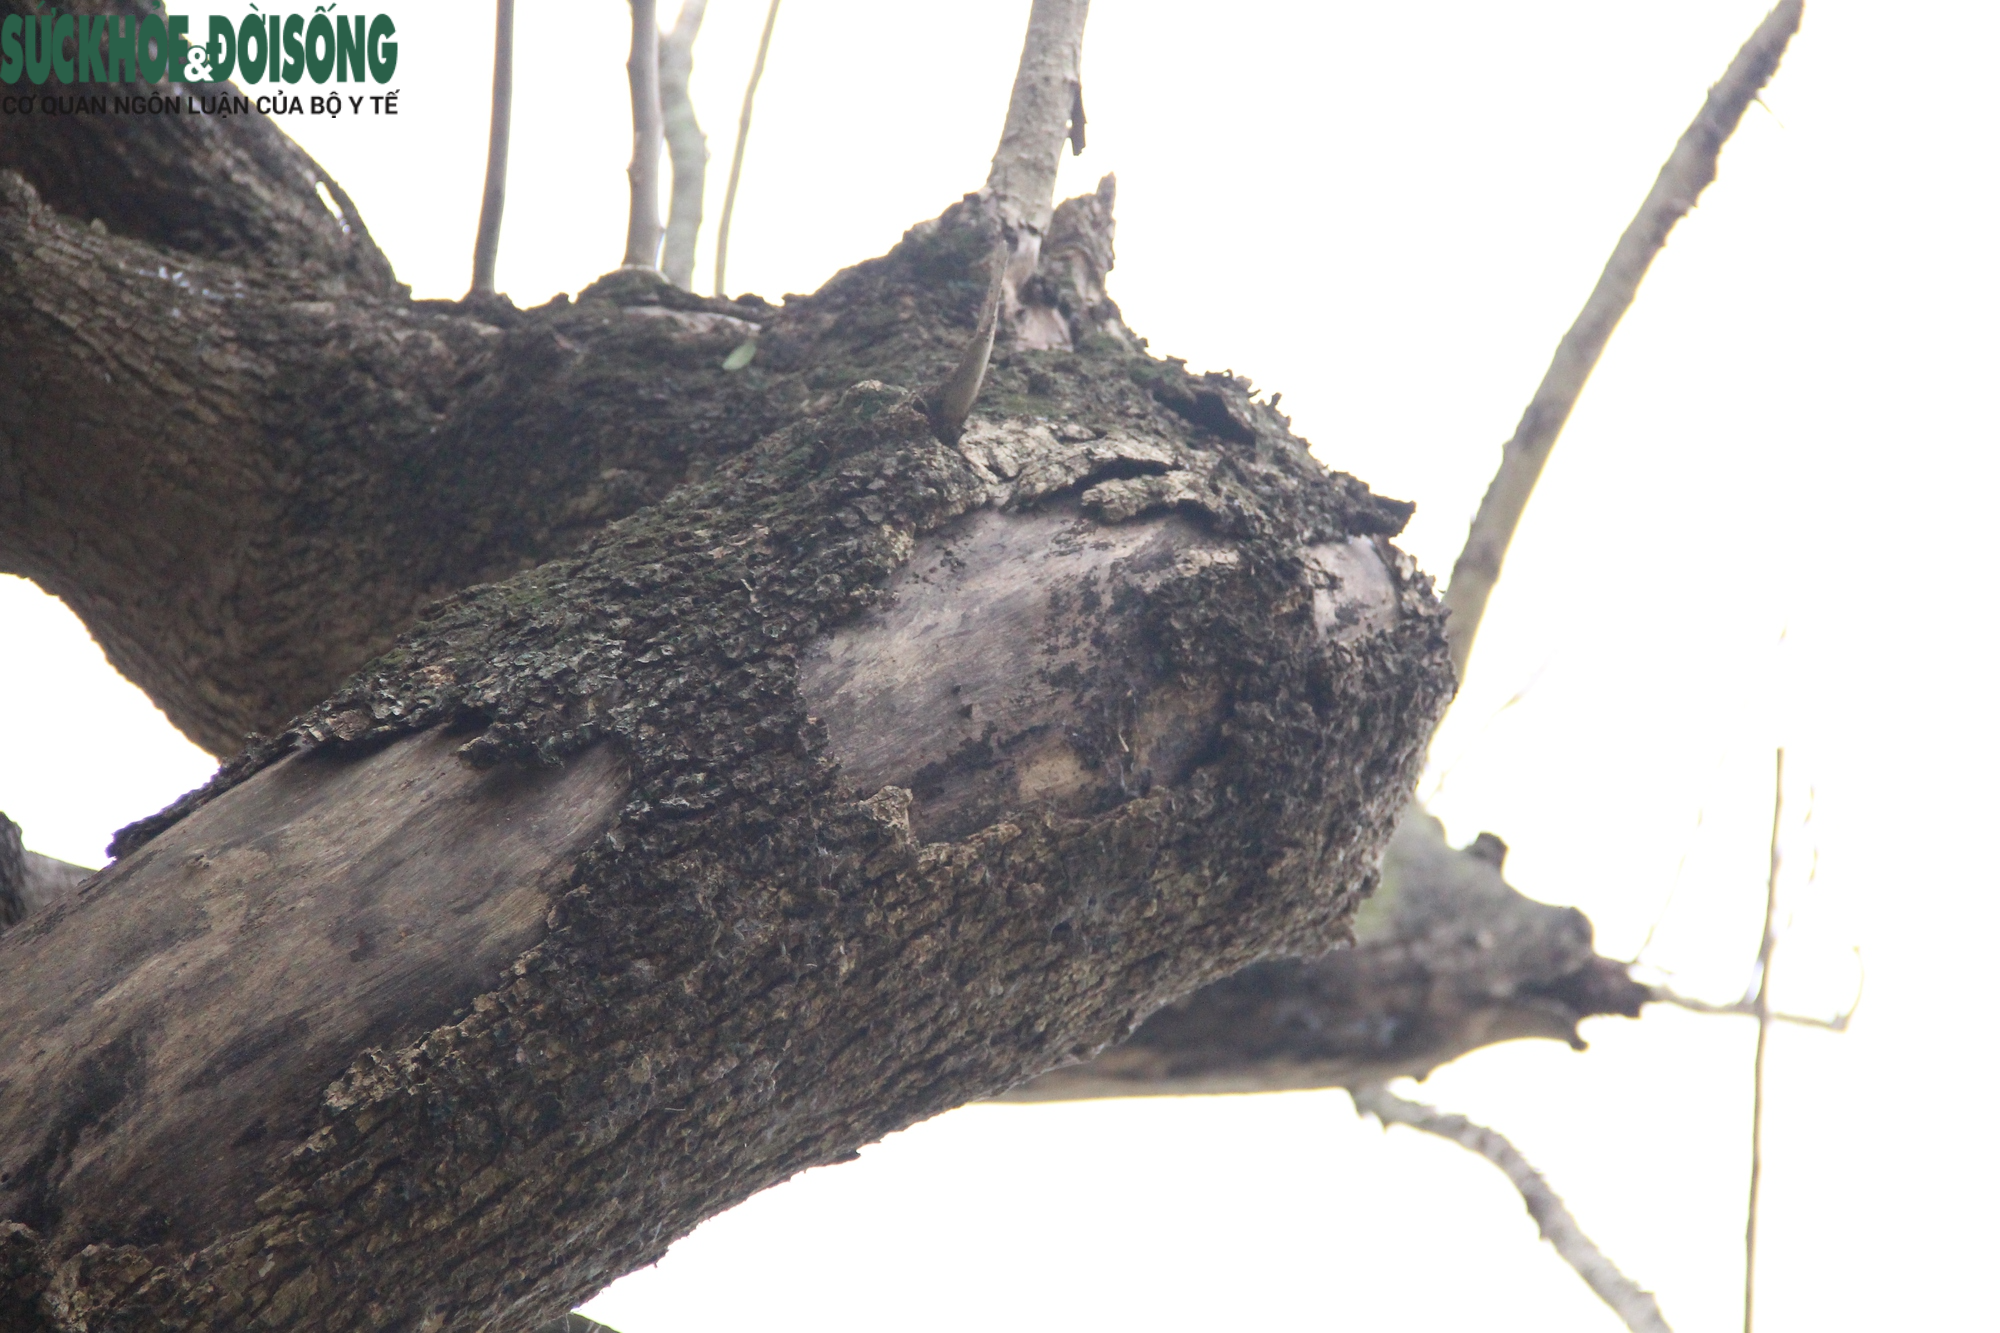 Cây gỗ quý ở Hồ Gươm có dấu hiệu khô héo, nghi đã chết từ lâu - Ảnh 12.